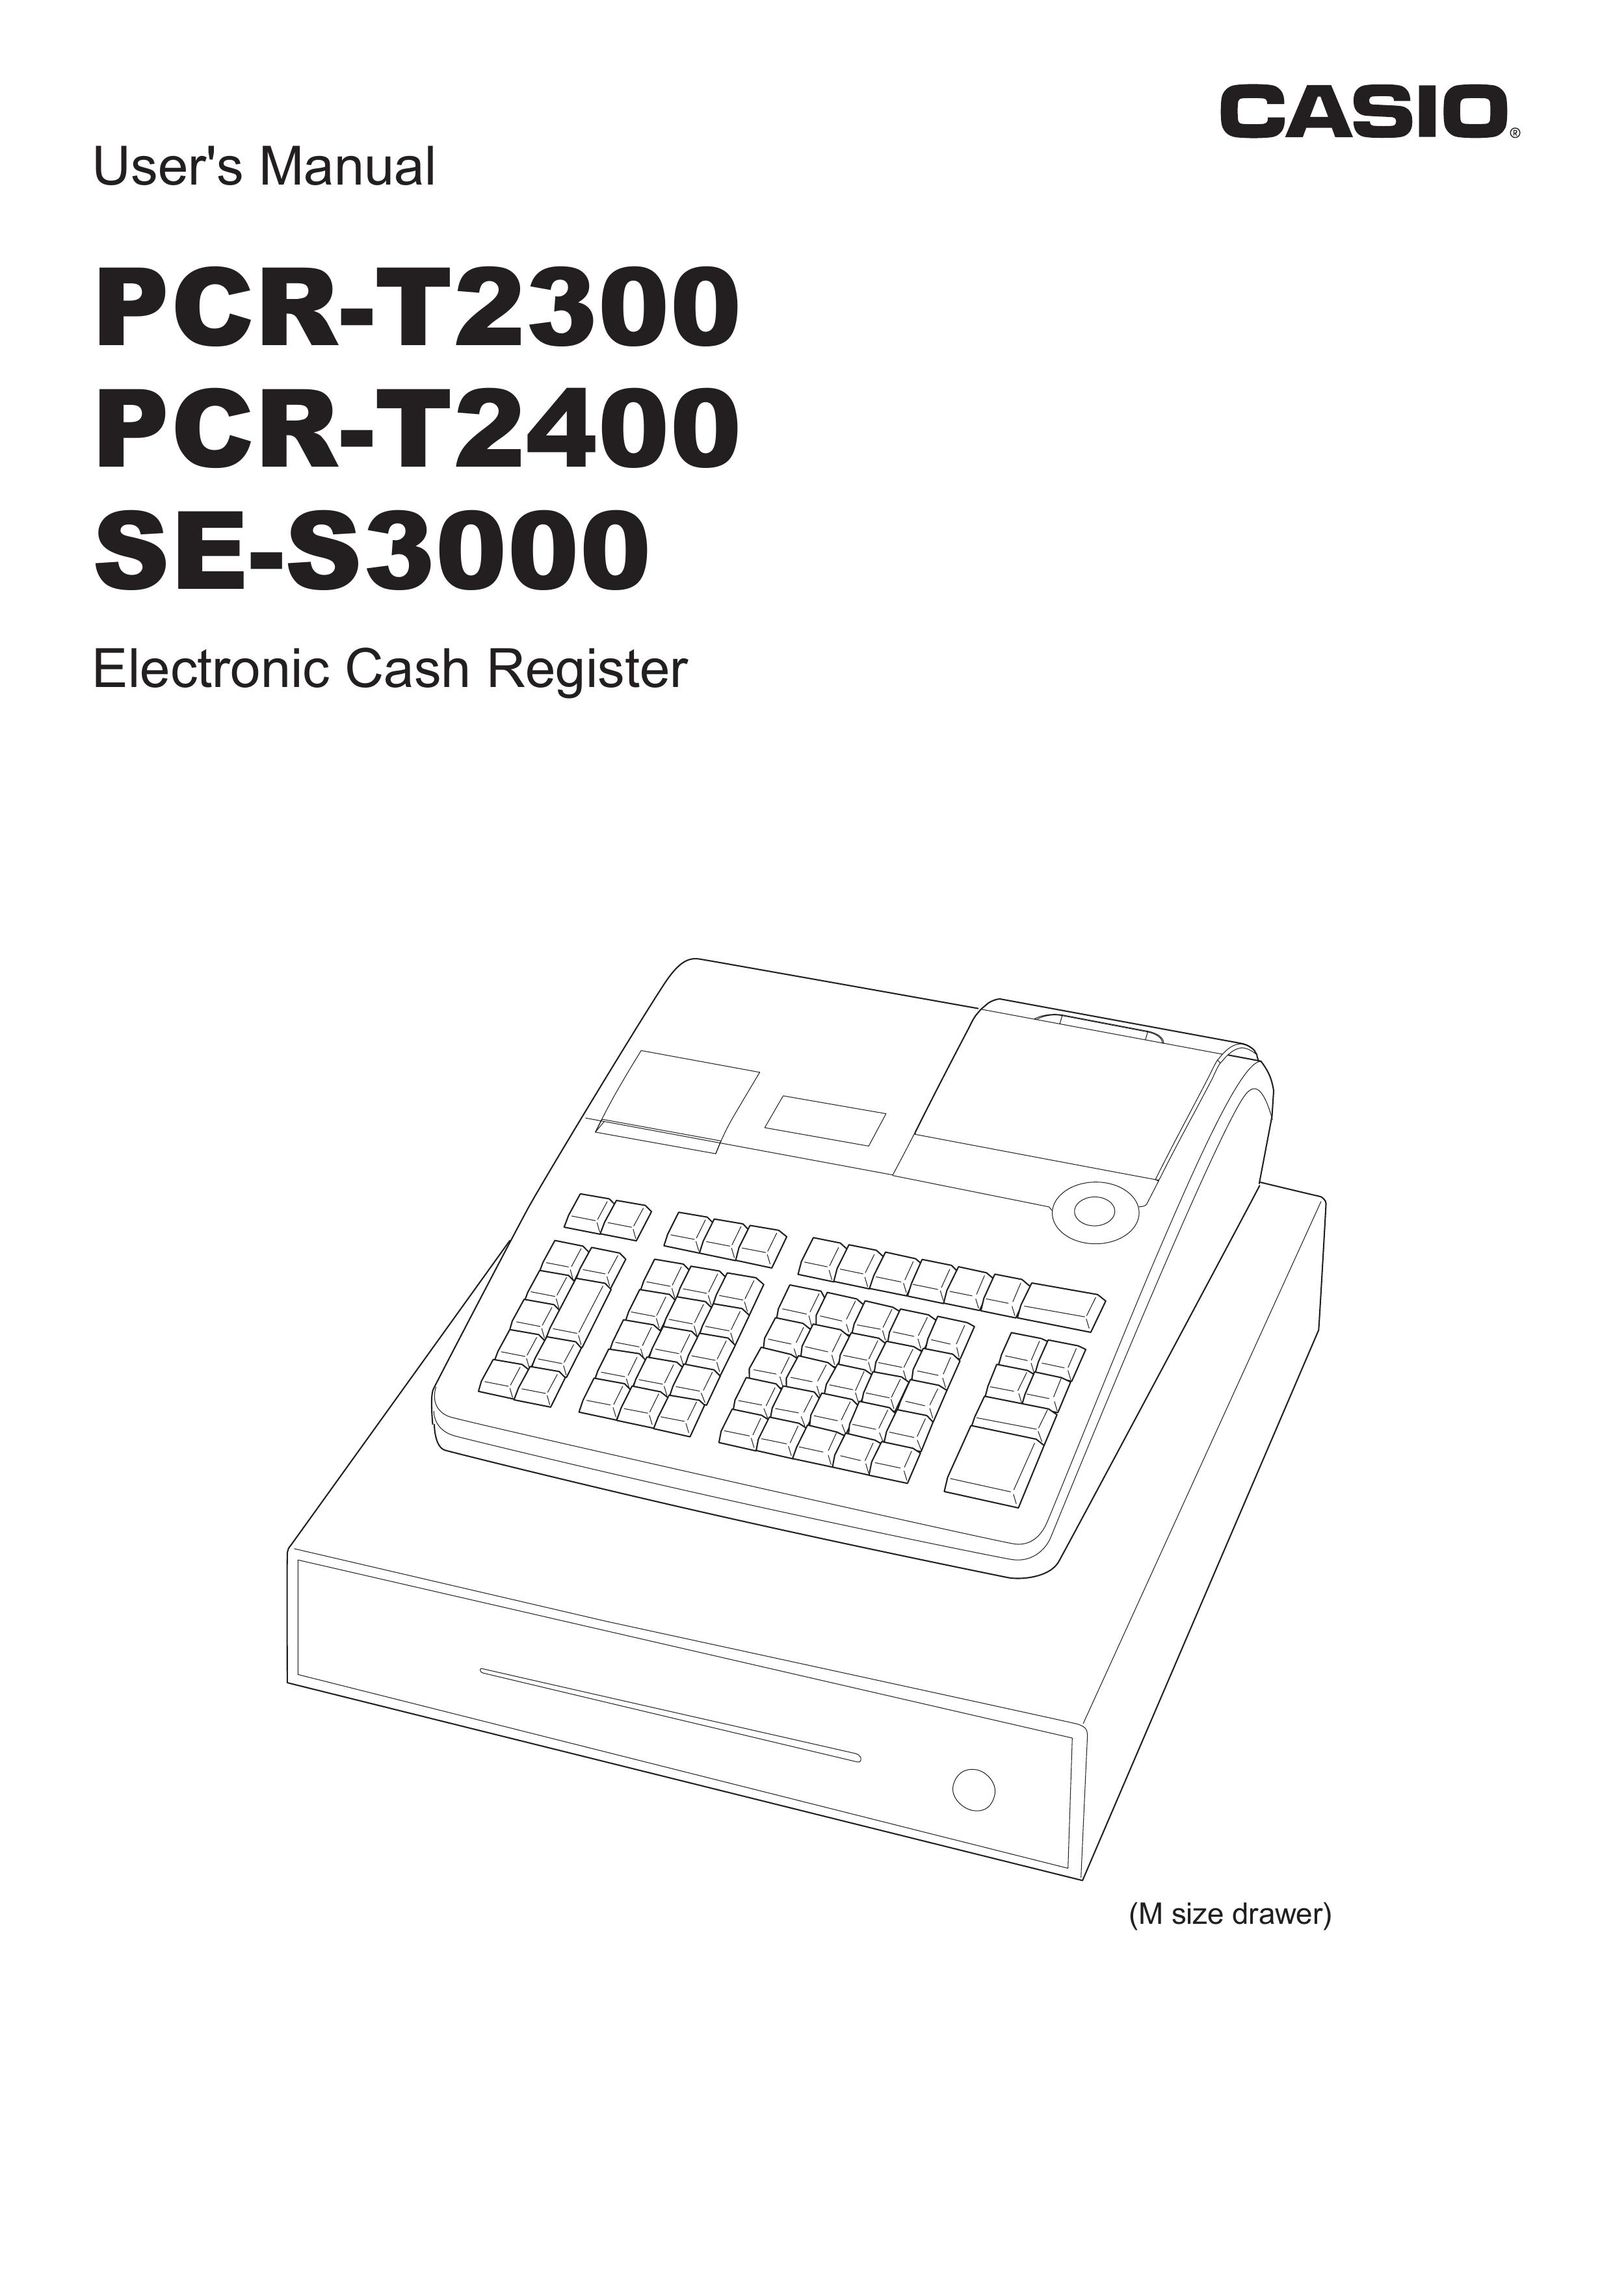 Casio PCR-T2300 Cash Register User Manual